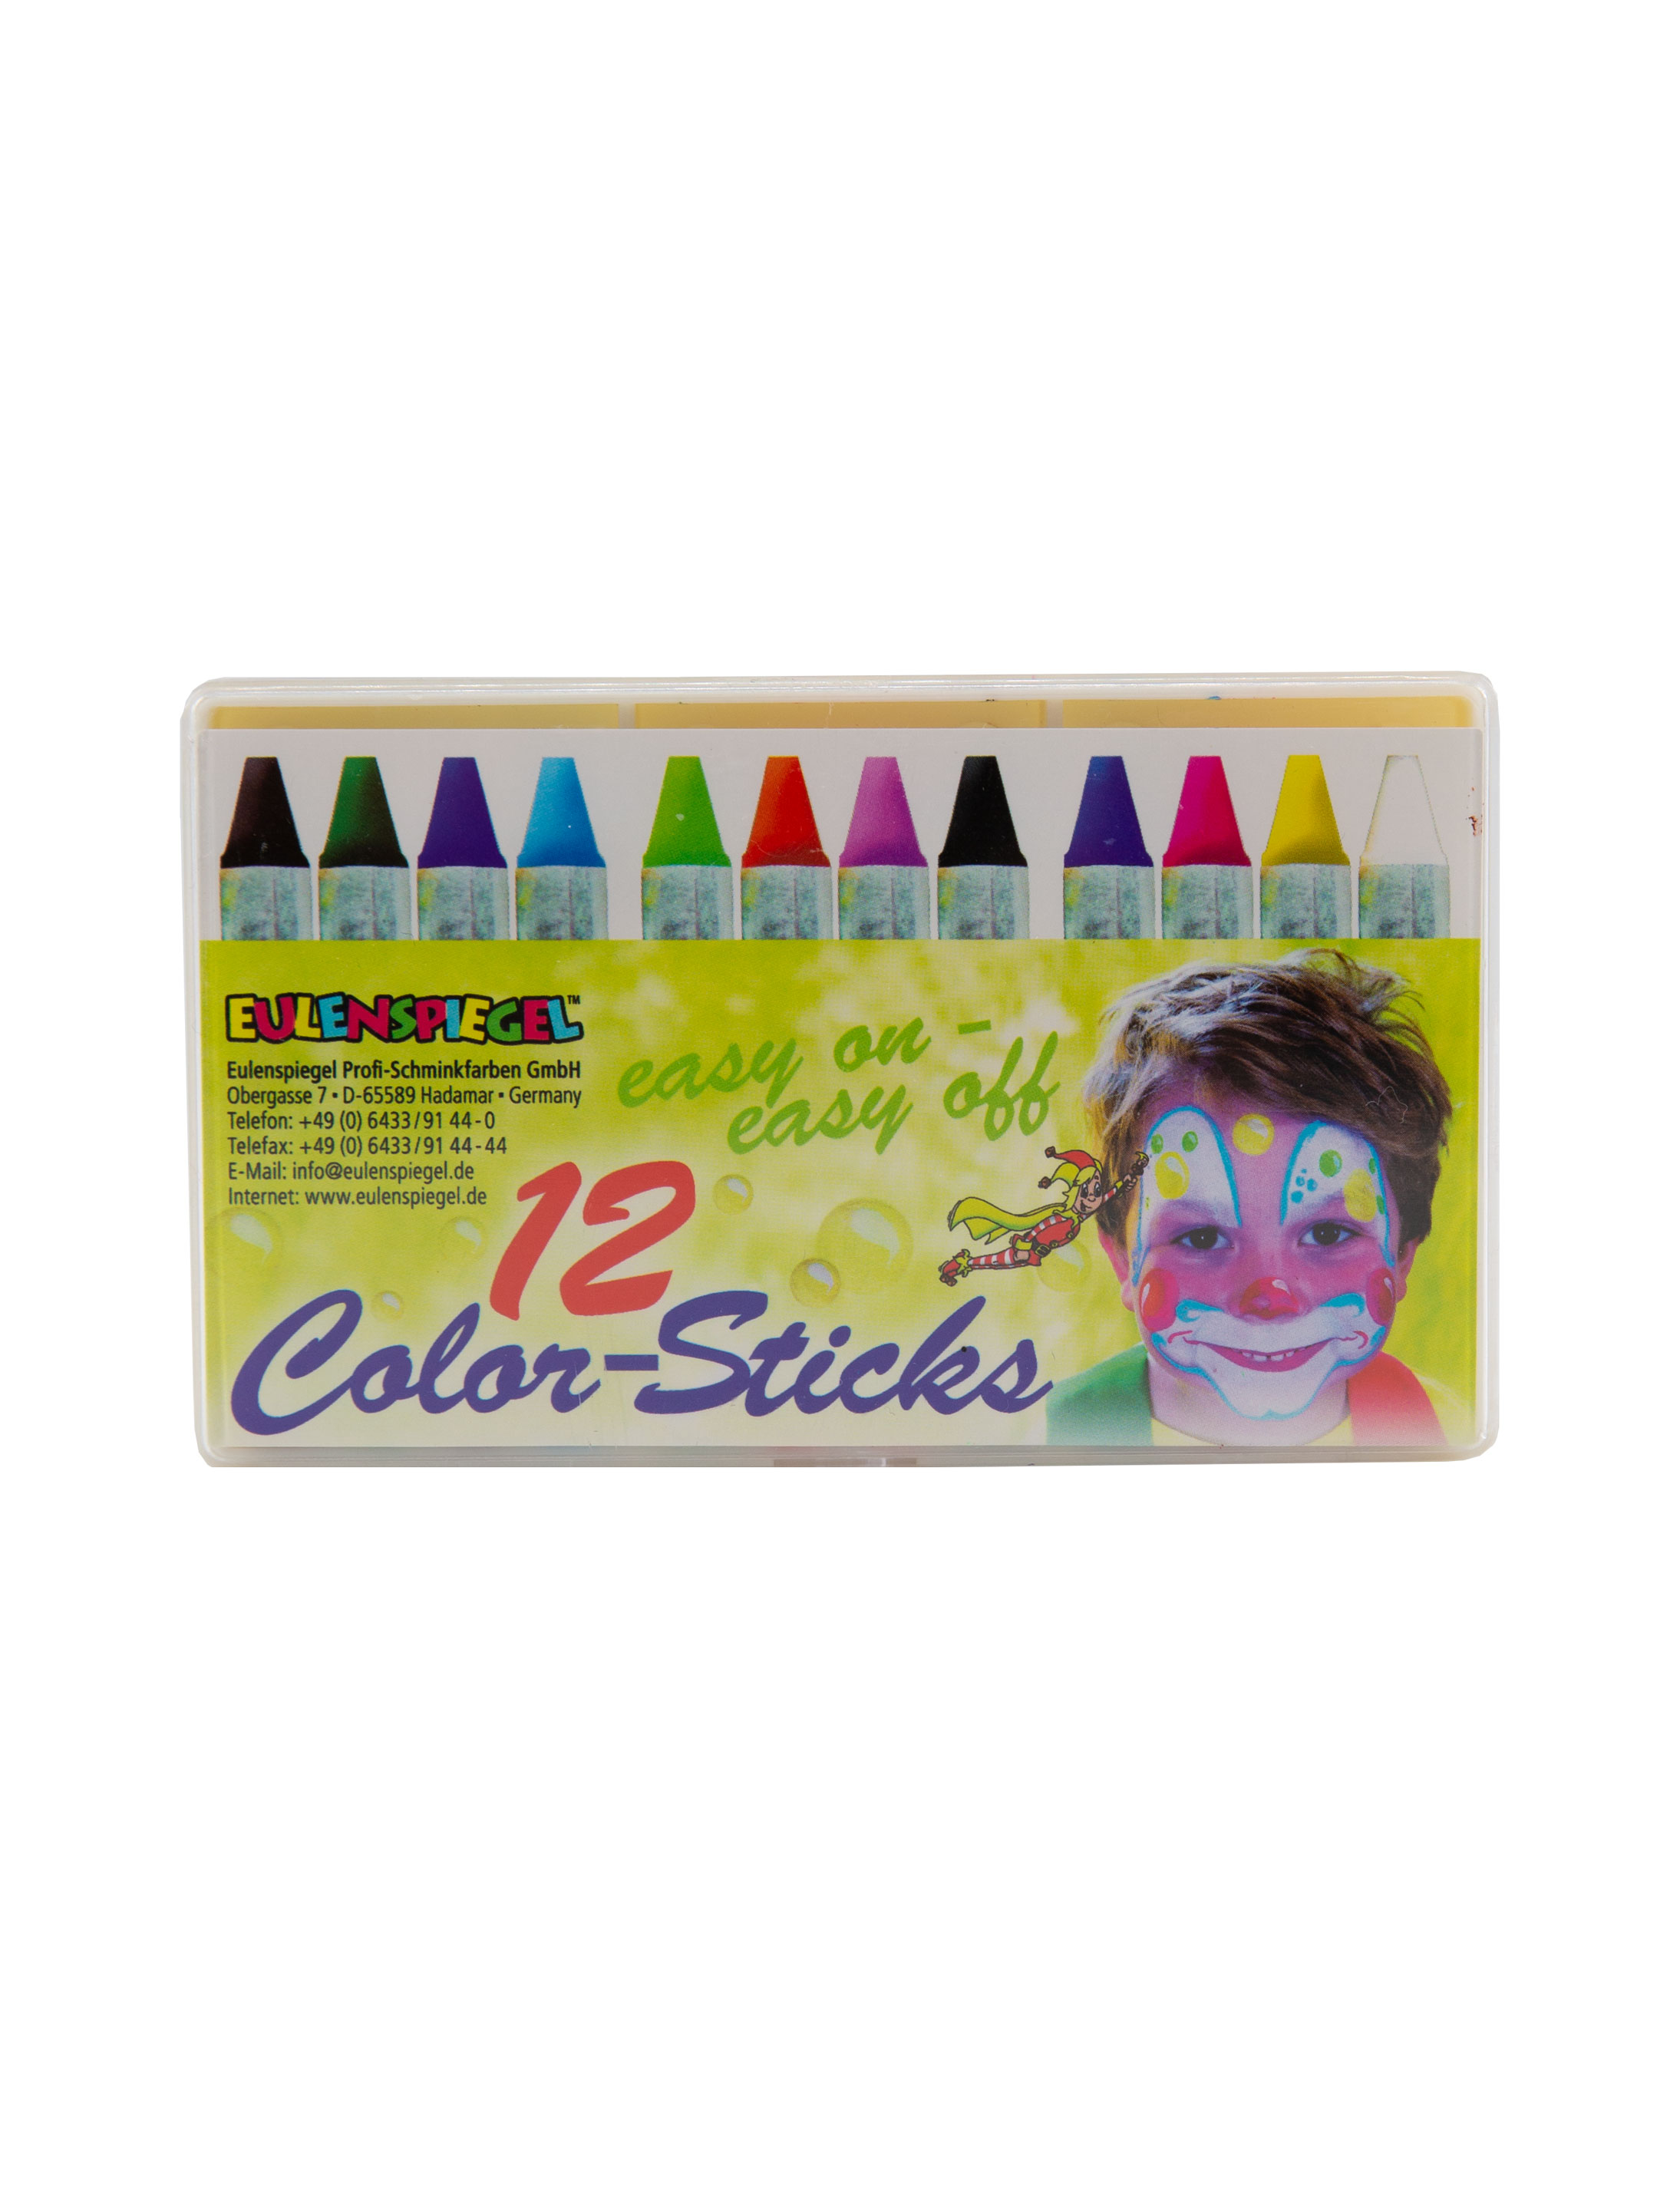 Color-Sticks 12er